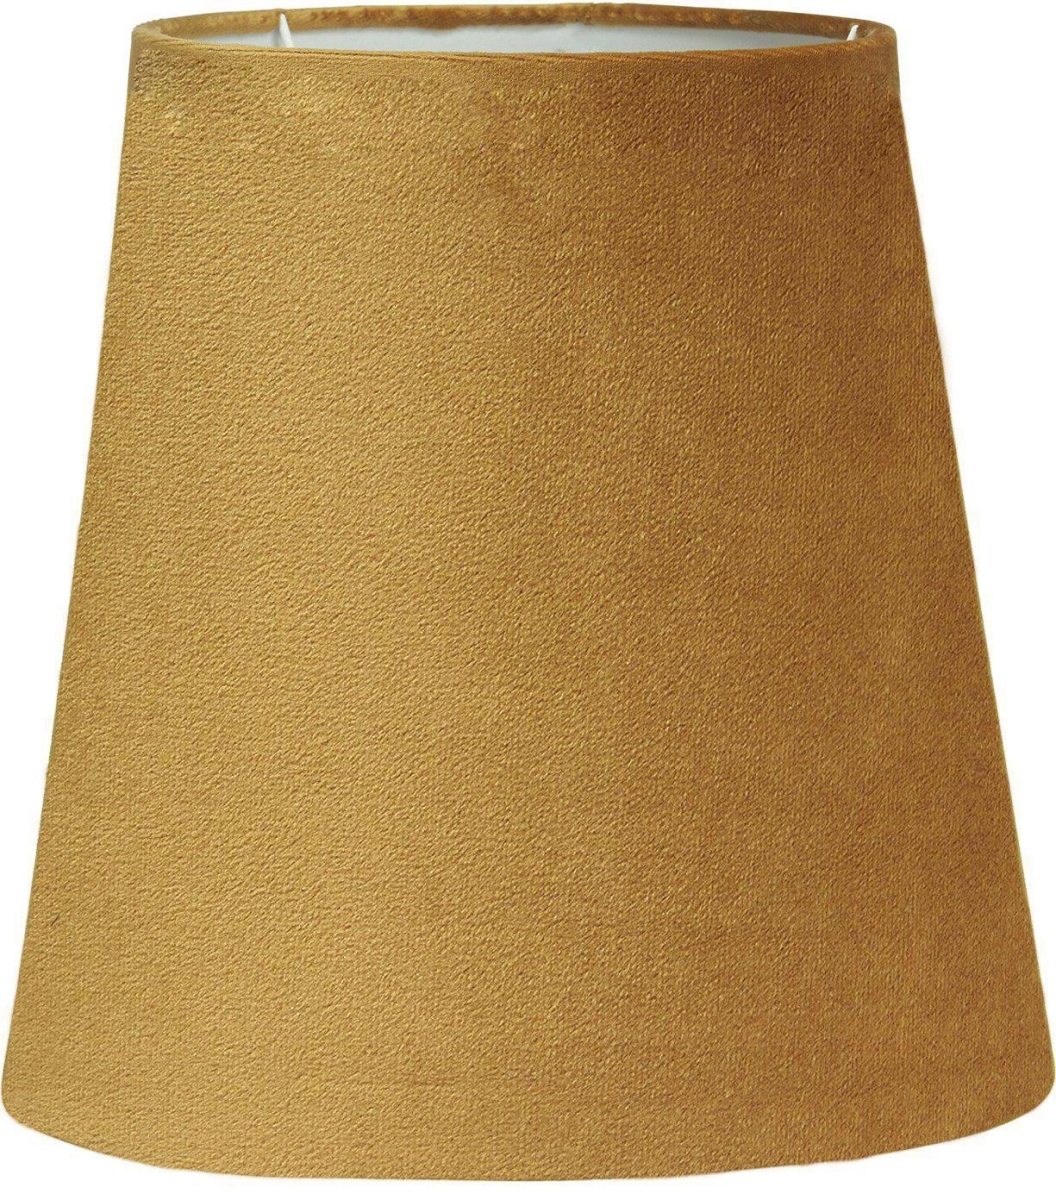 Lampenschirm Textil Samt gelb PR Home Queen 12x12cm Befestigungsklipp fr Kerzen Leuchtmittel unter Leuchtenschirme > Wohnzimmerbeleuchtung > Nach Marke